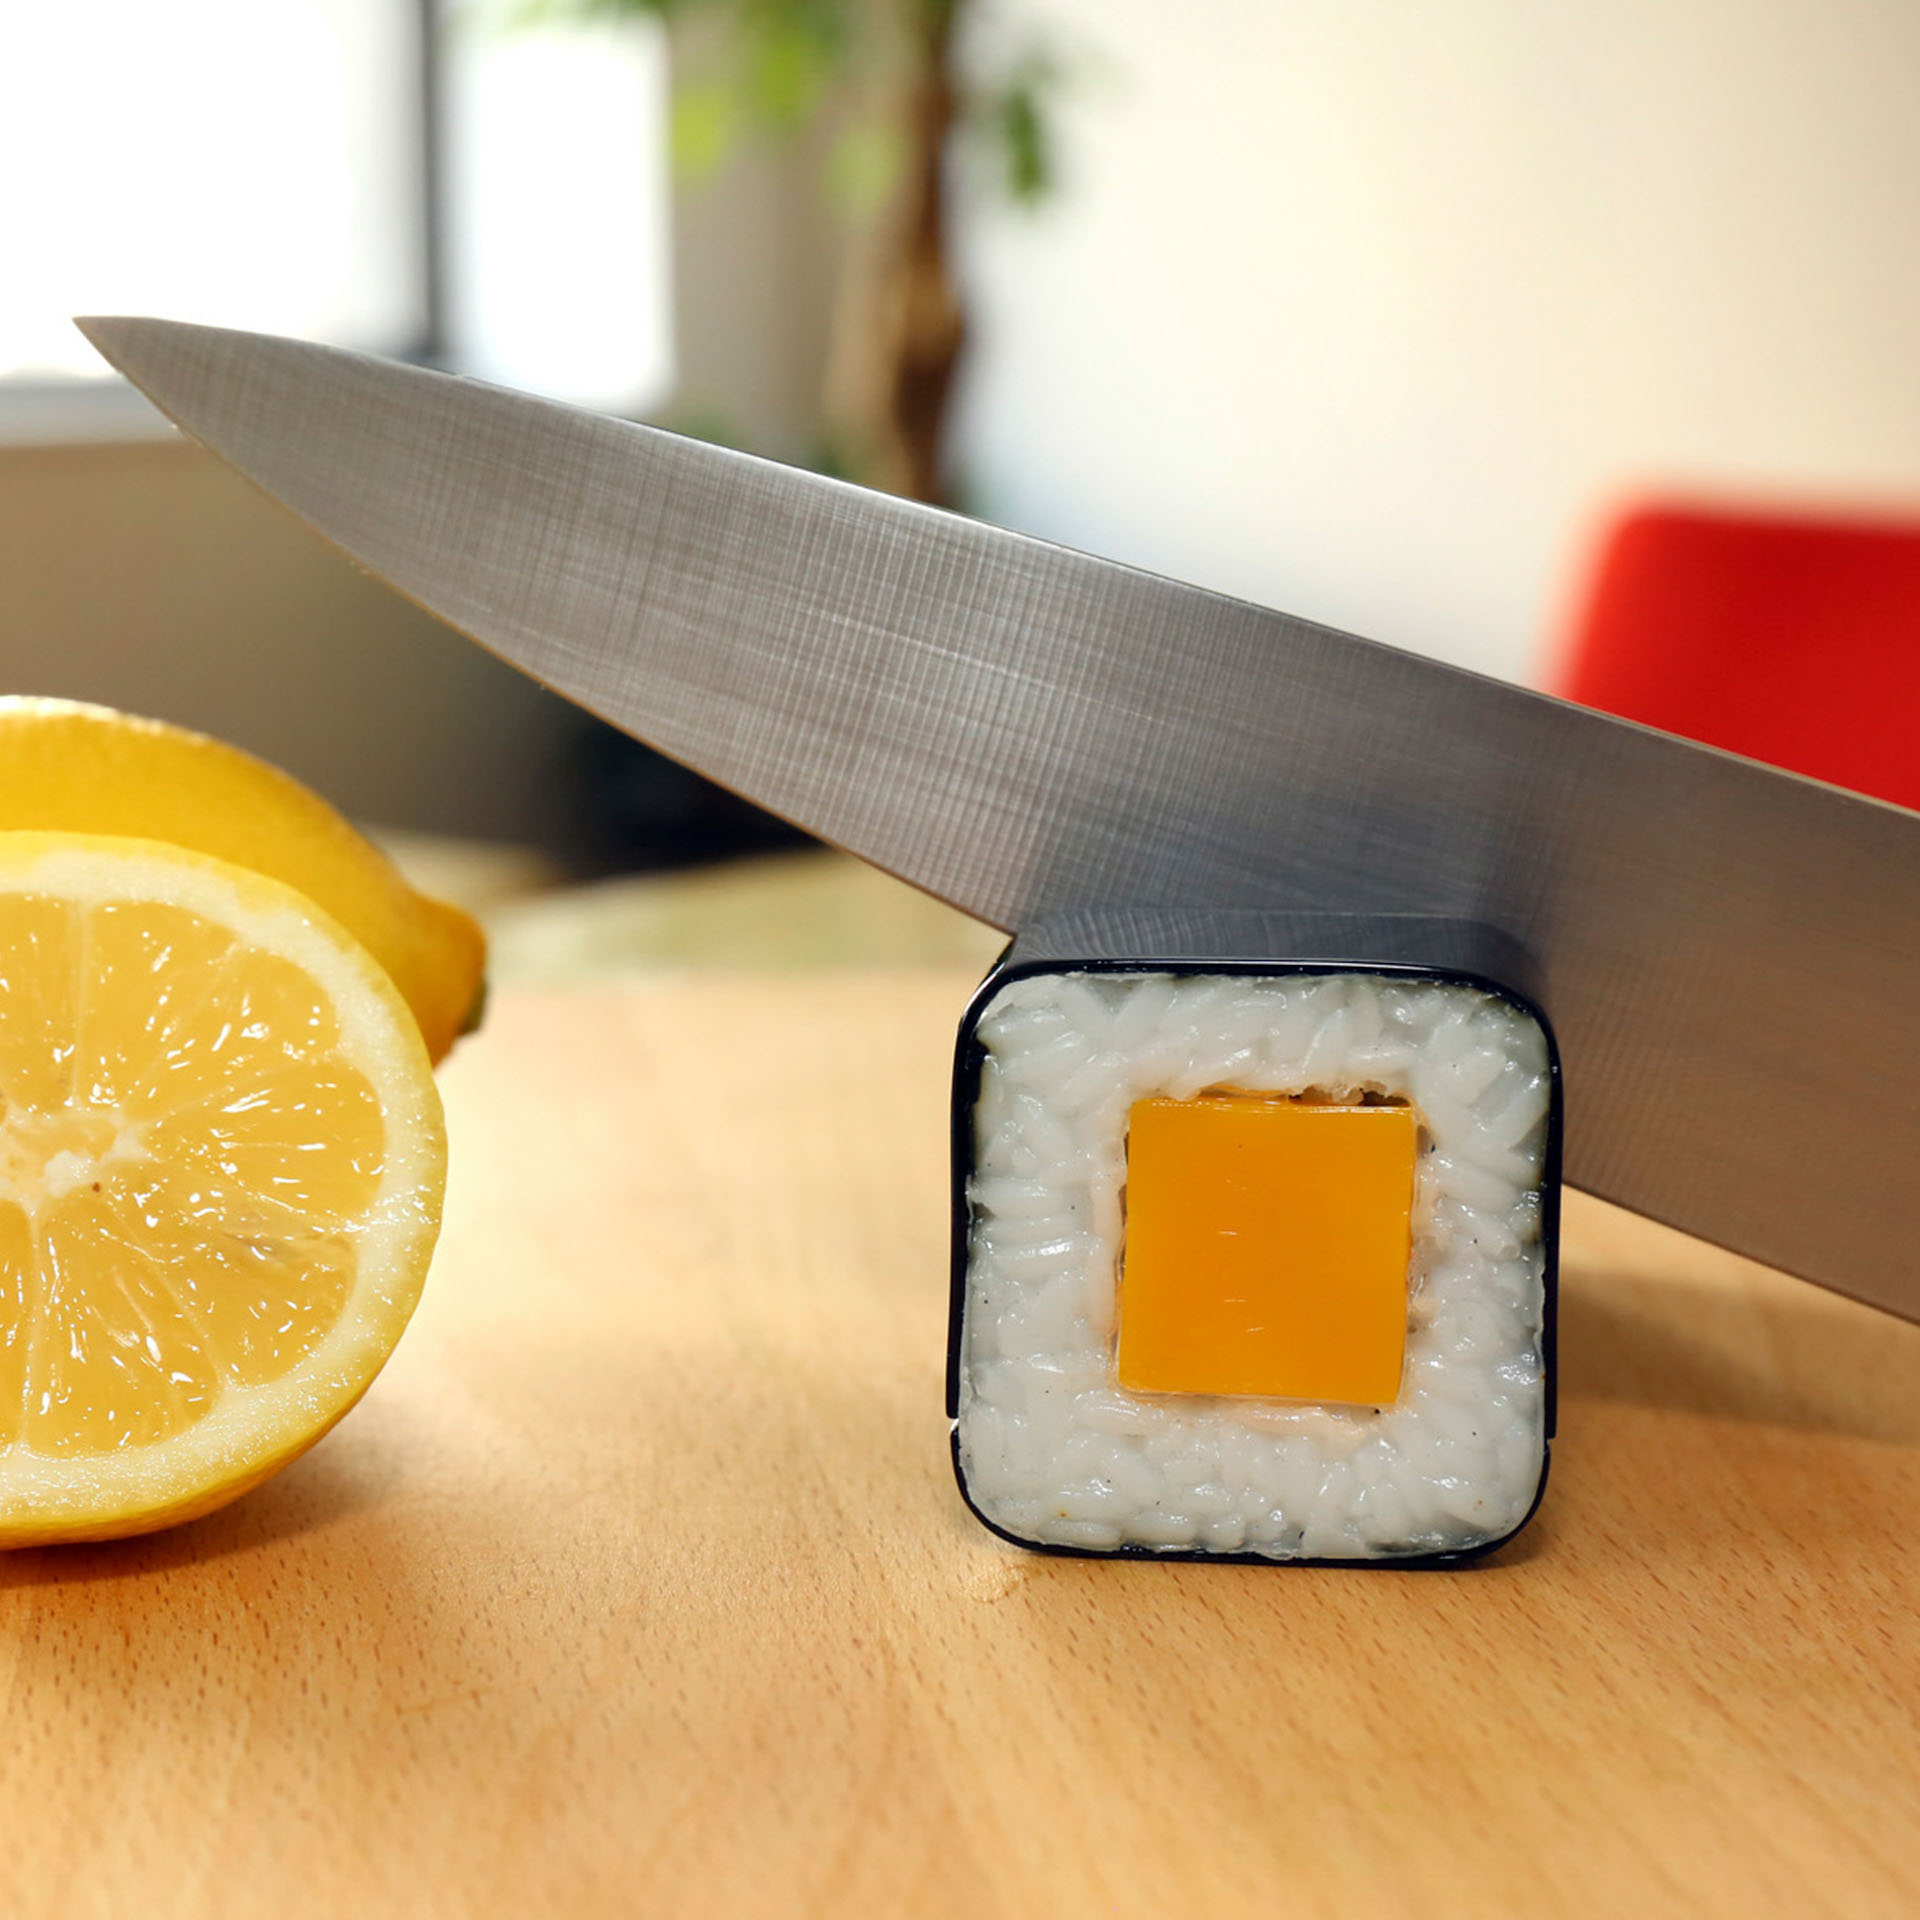 Affila coltelli manuale a forma di sushi, , large